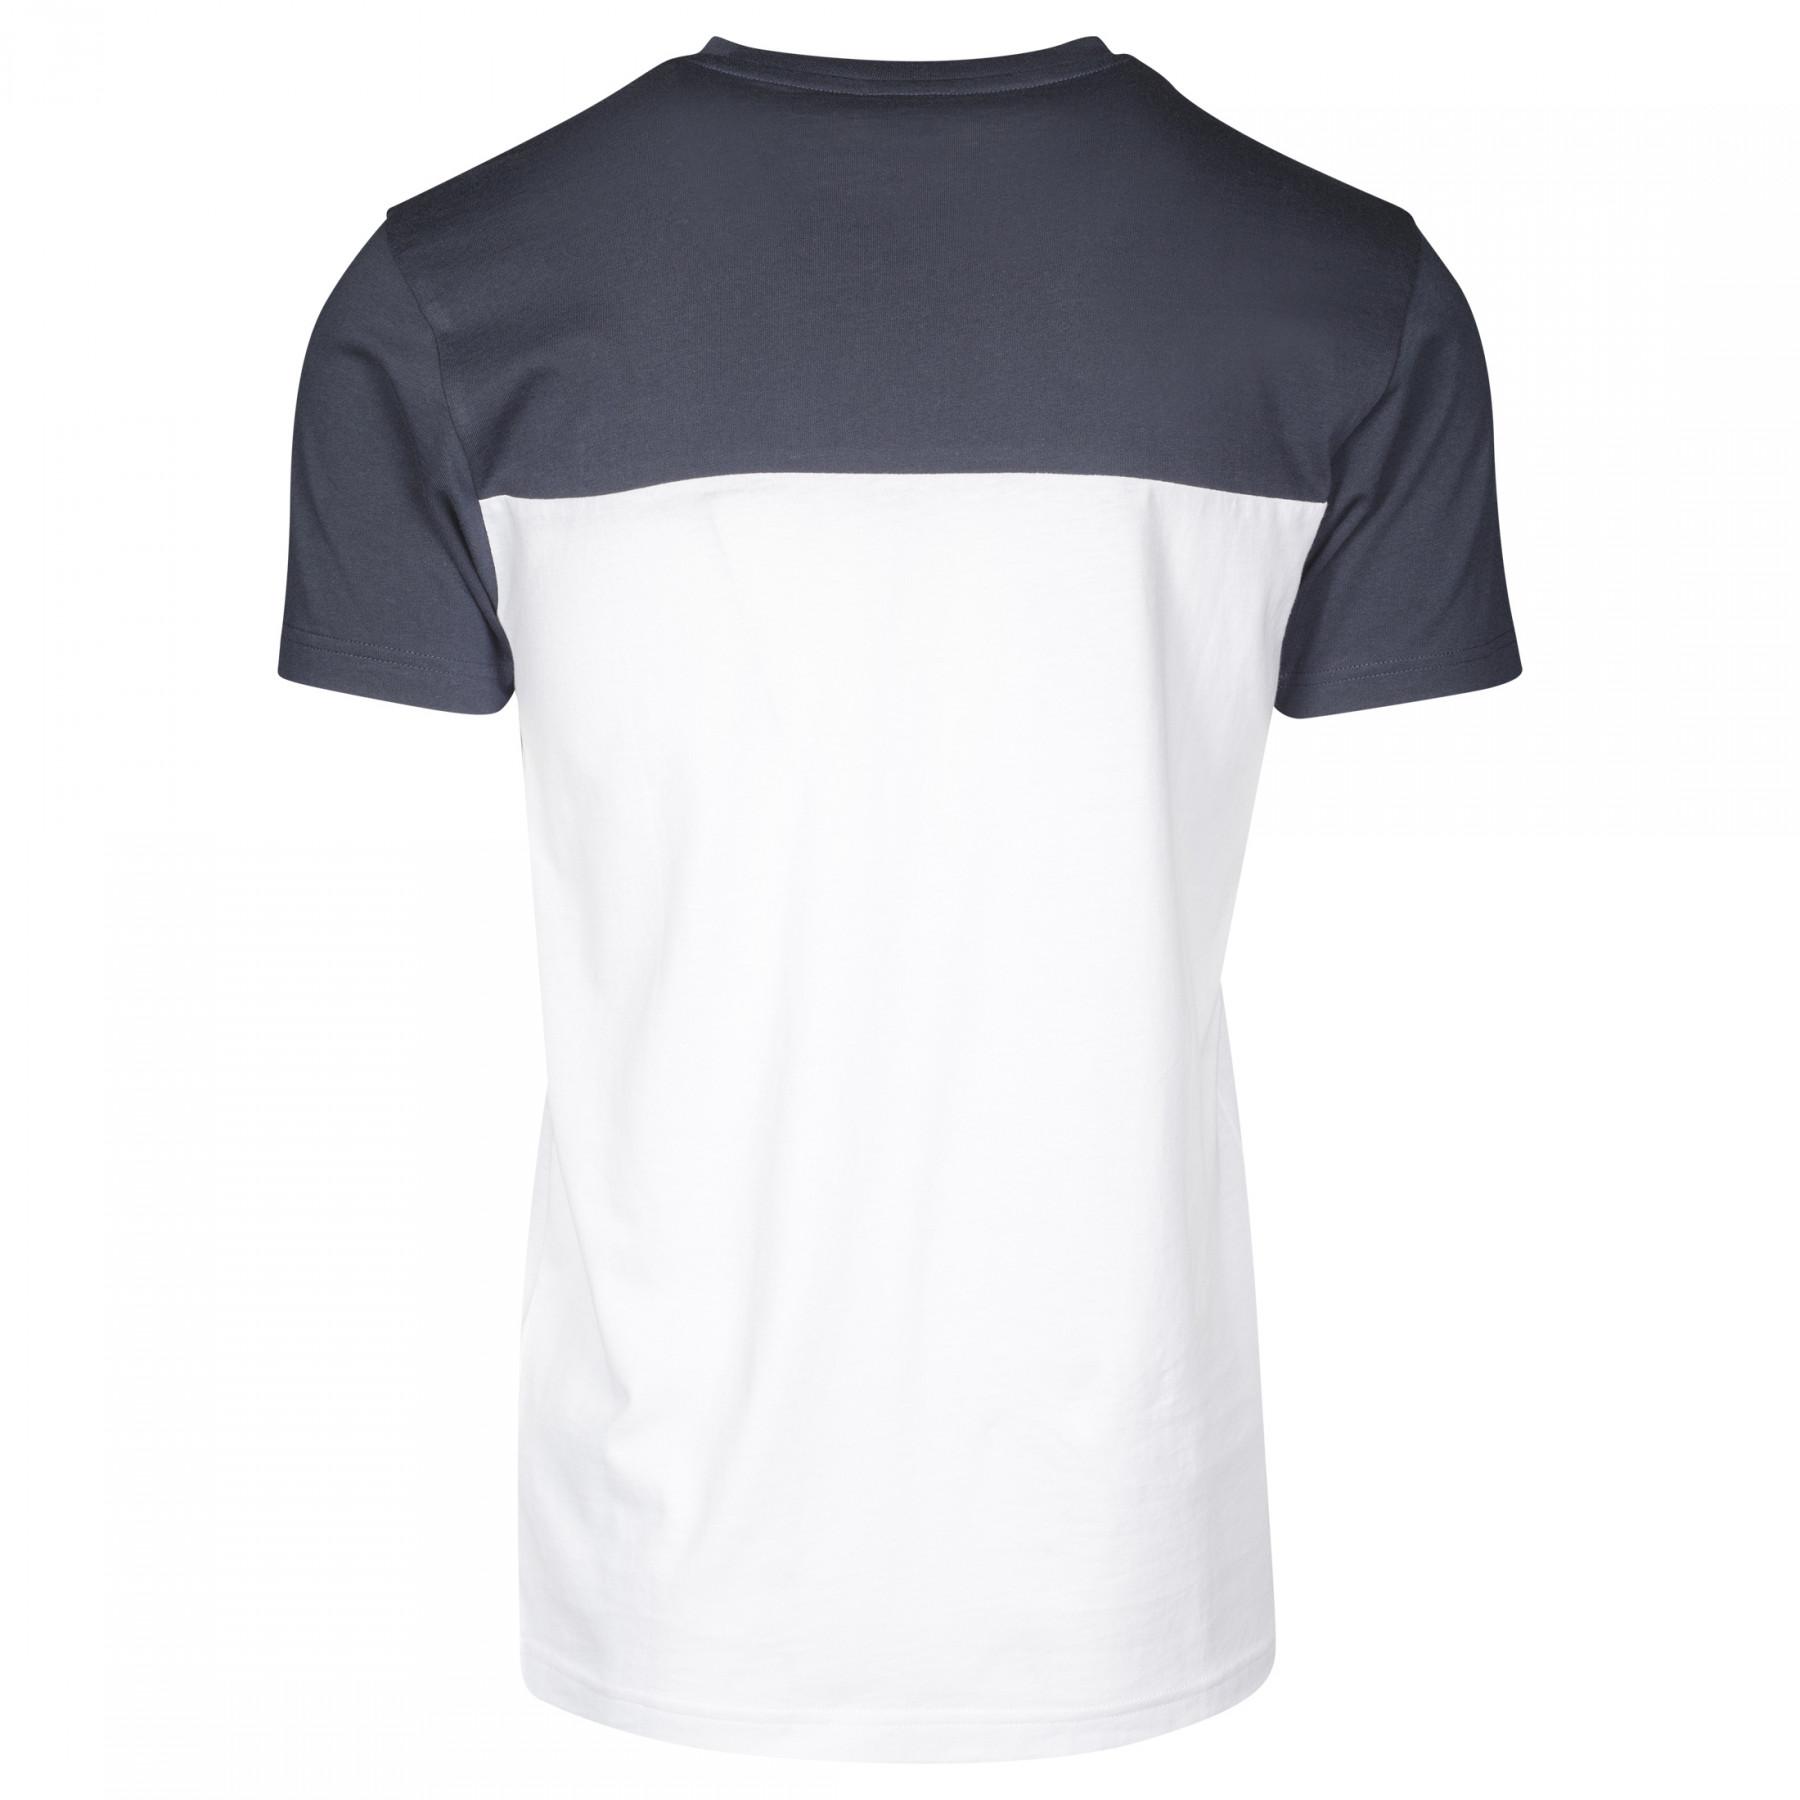 Camiseta Urban Classic 3-tone pocket